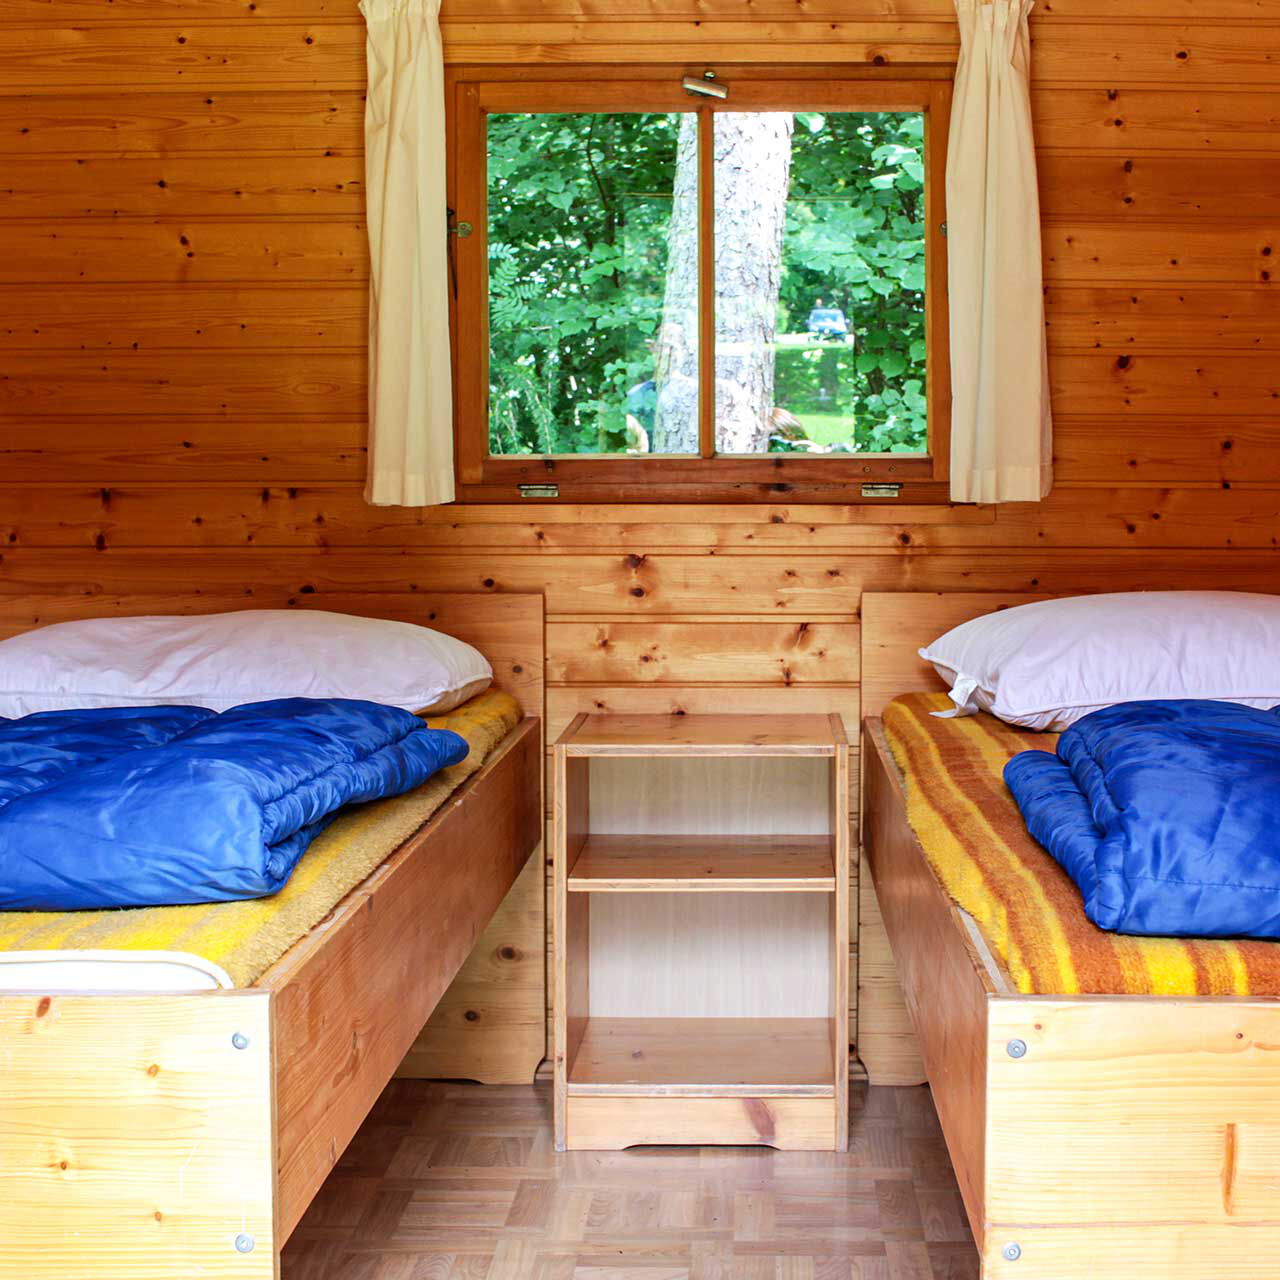 Der Innenbereich eines Holzhäuschen mit zwei Einzelbetten und einem Nachttischschrank.